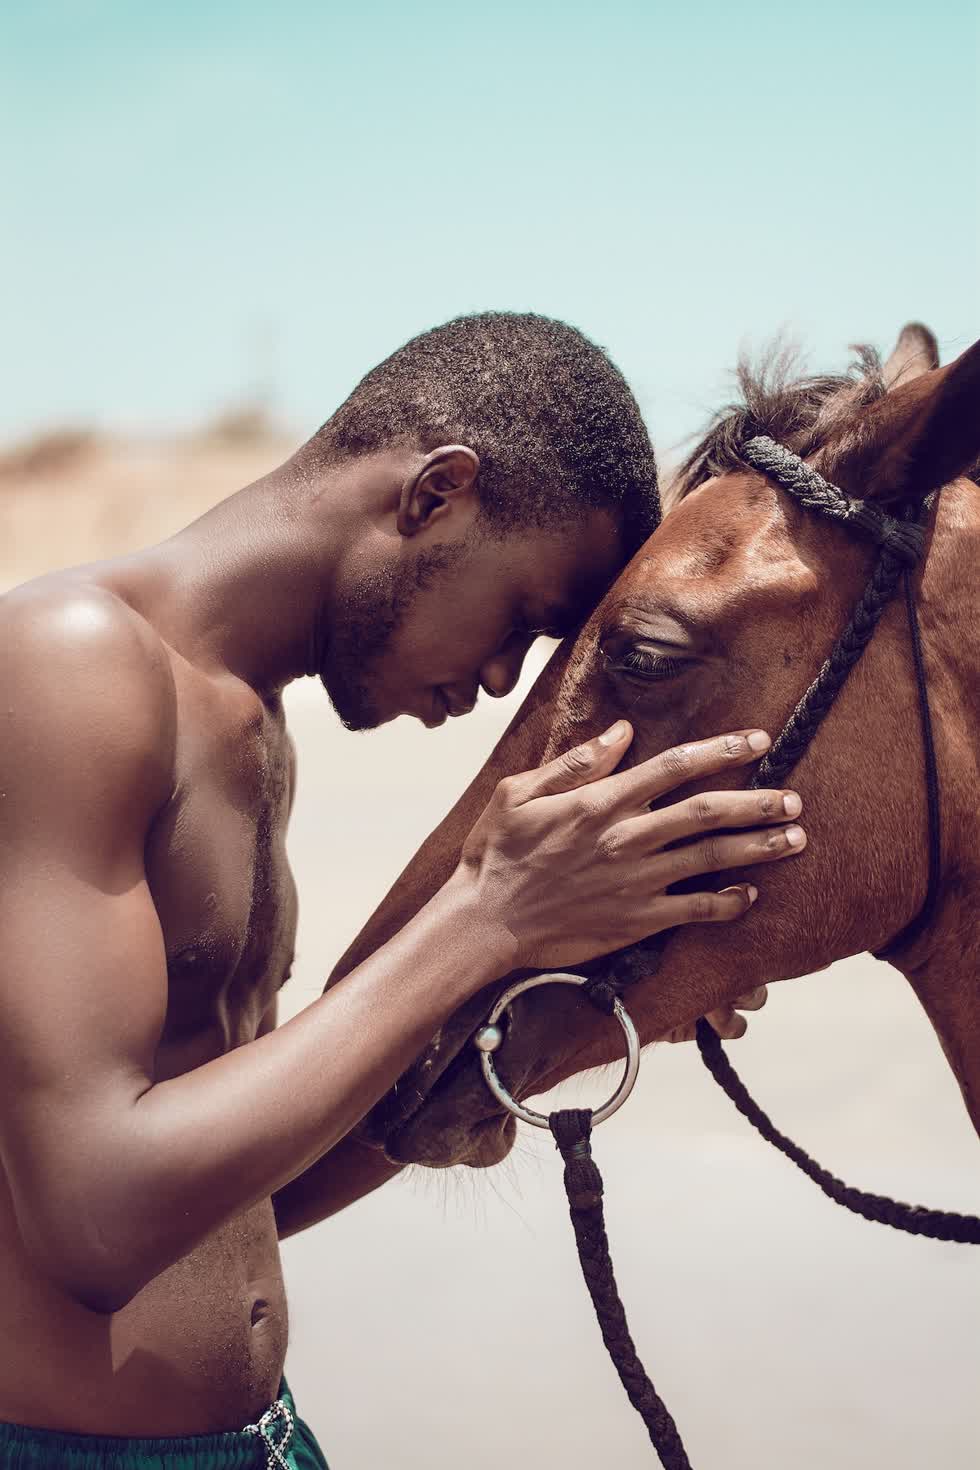   Nhiếp ảnh gia muốn thể hiện mối quan hệ thân mật, giao cảm giữa một người đàn ông và một con vật Ảnh: Clement Eastwood.  